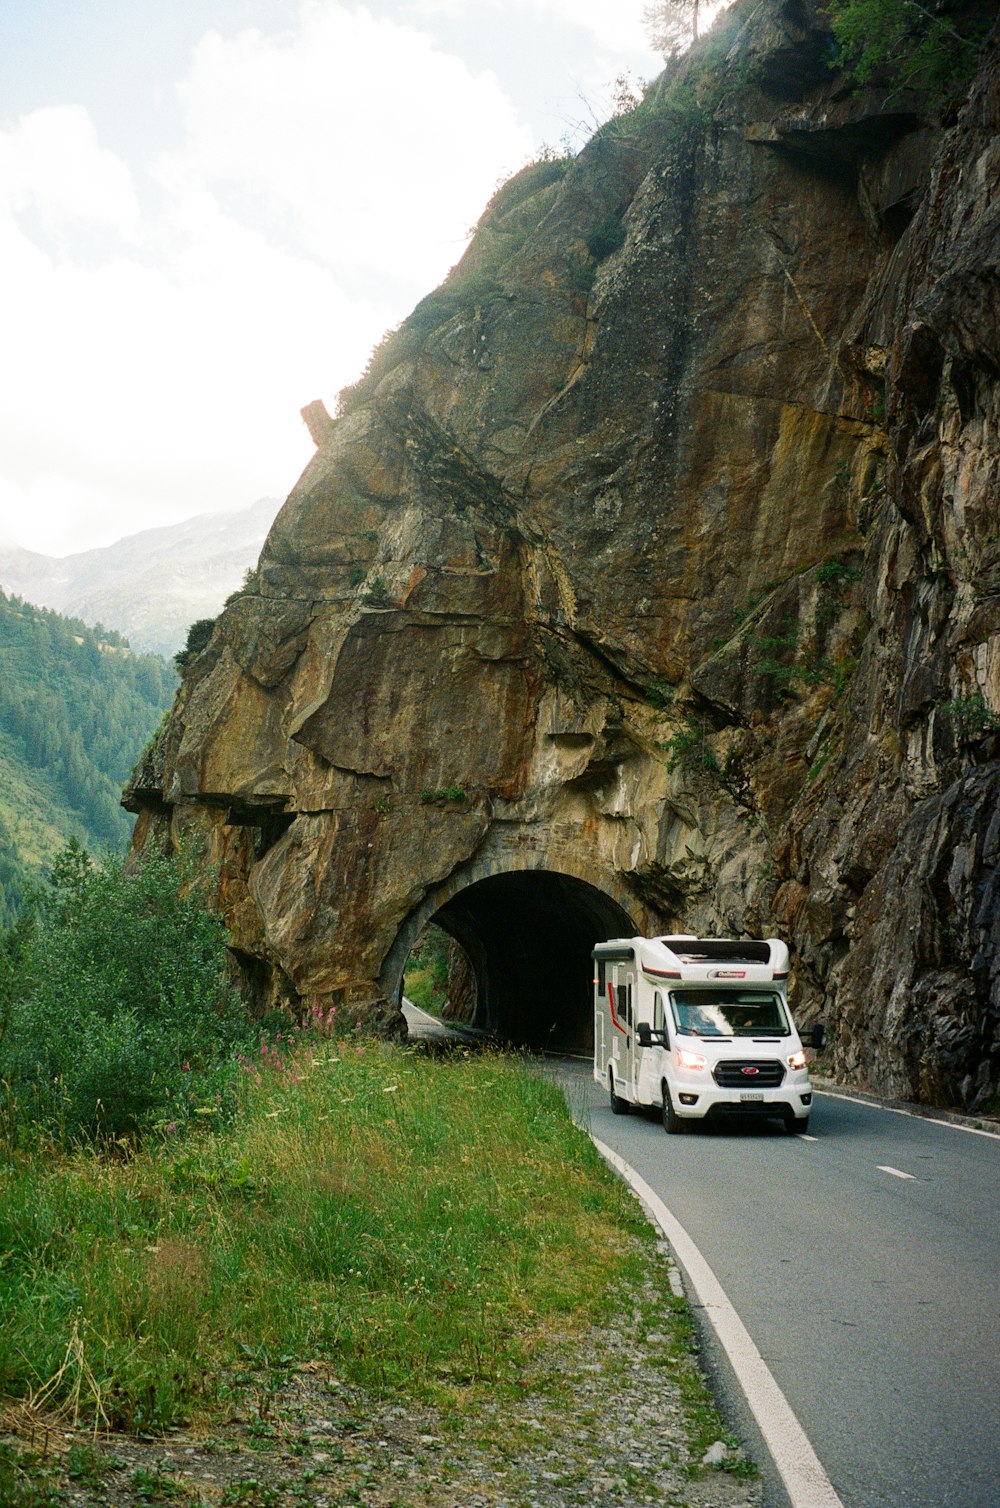 Un camion che guida in un tunnel sul fianco di una montagna